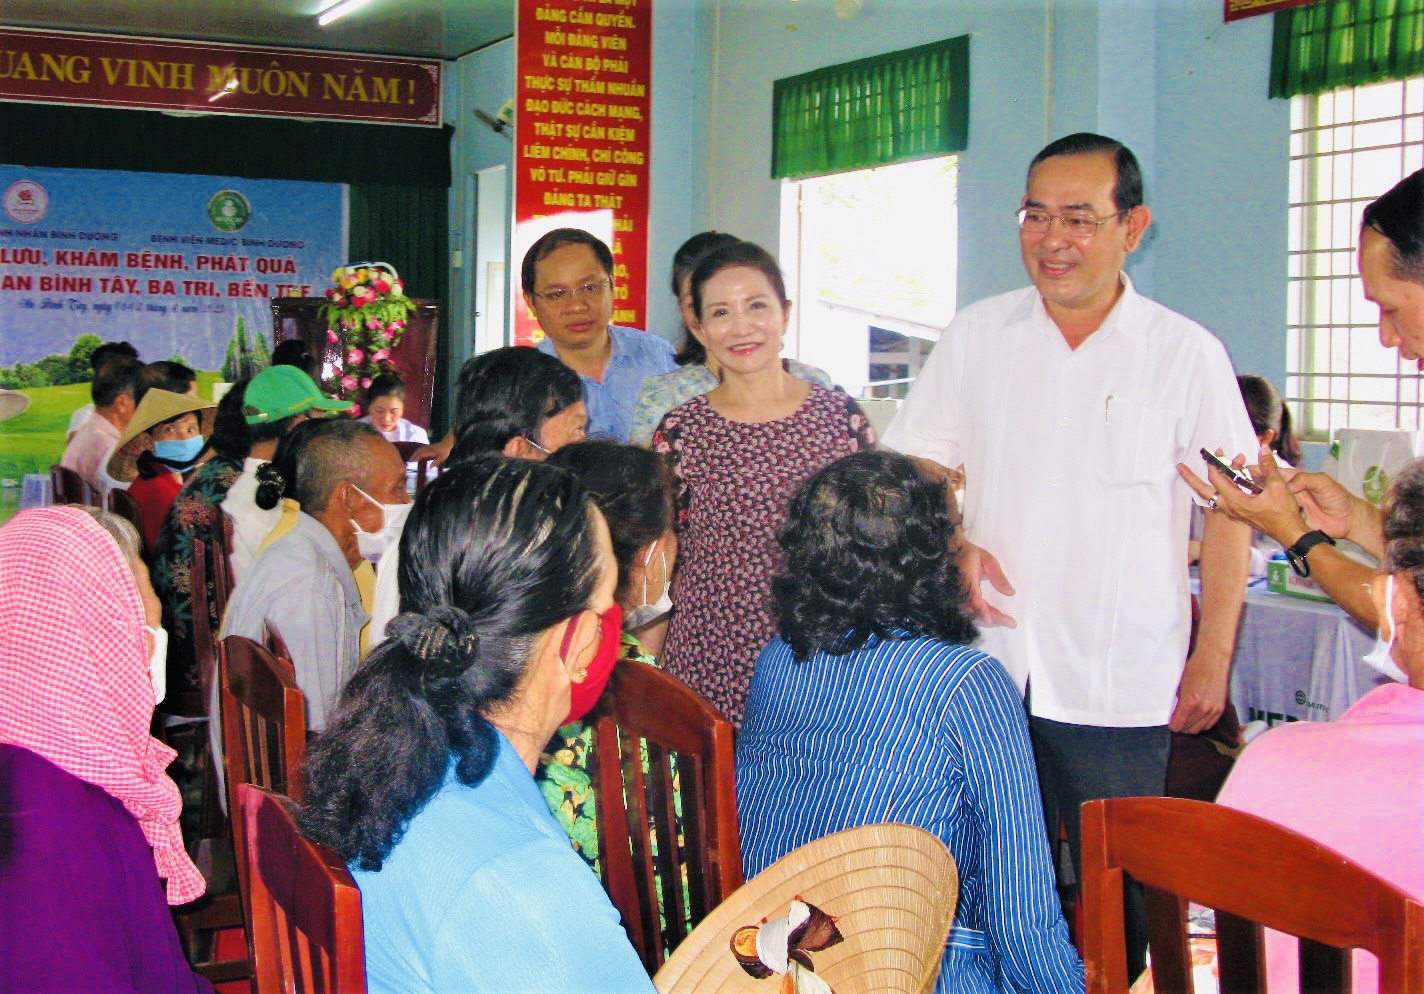 Trong ảnh là Đại diện lãnh đạo địa phương cùng Đoàn từ thiện ở Bình Dương thăm hỏi sức khỏe của người dân xã An Bình Tây, huyện Ba Tri